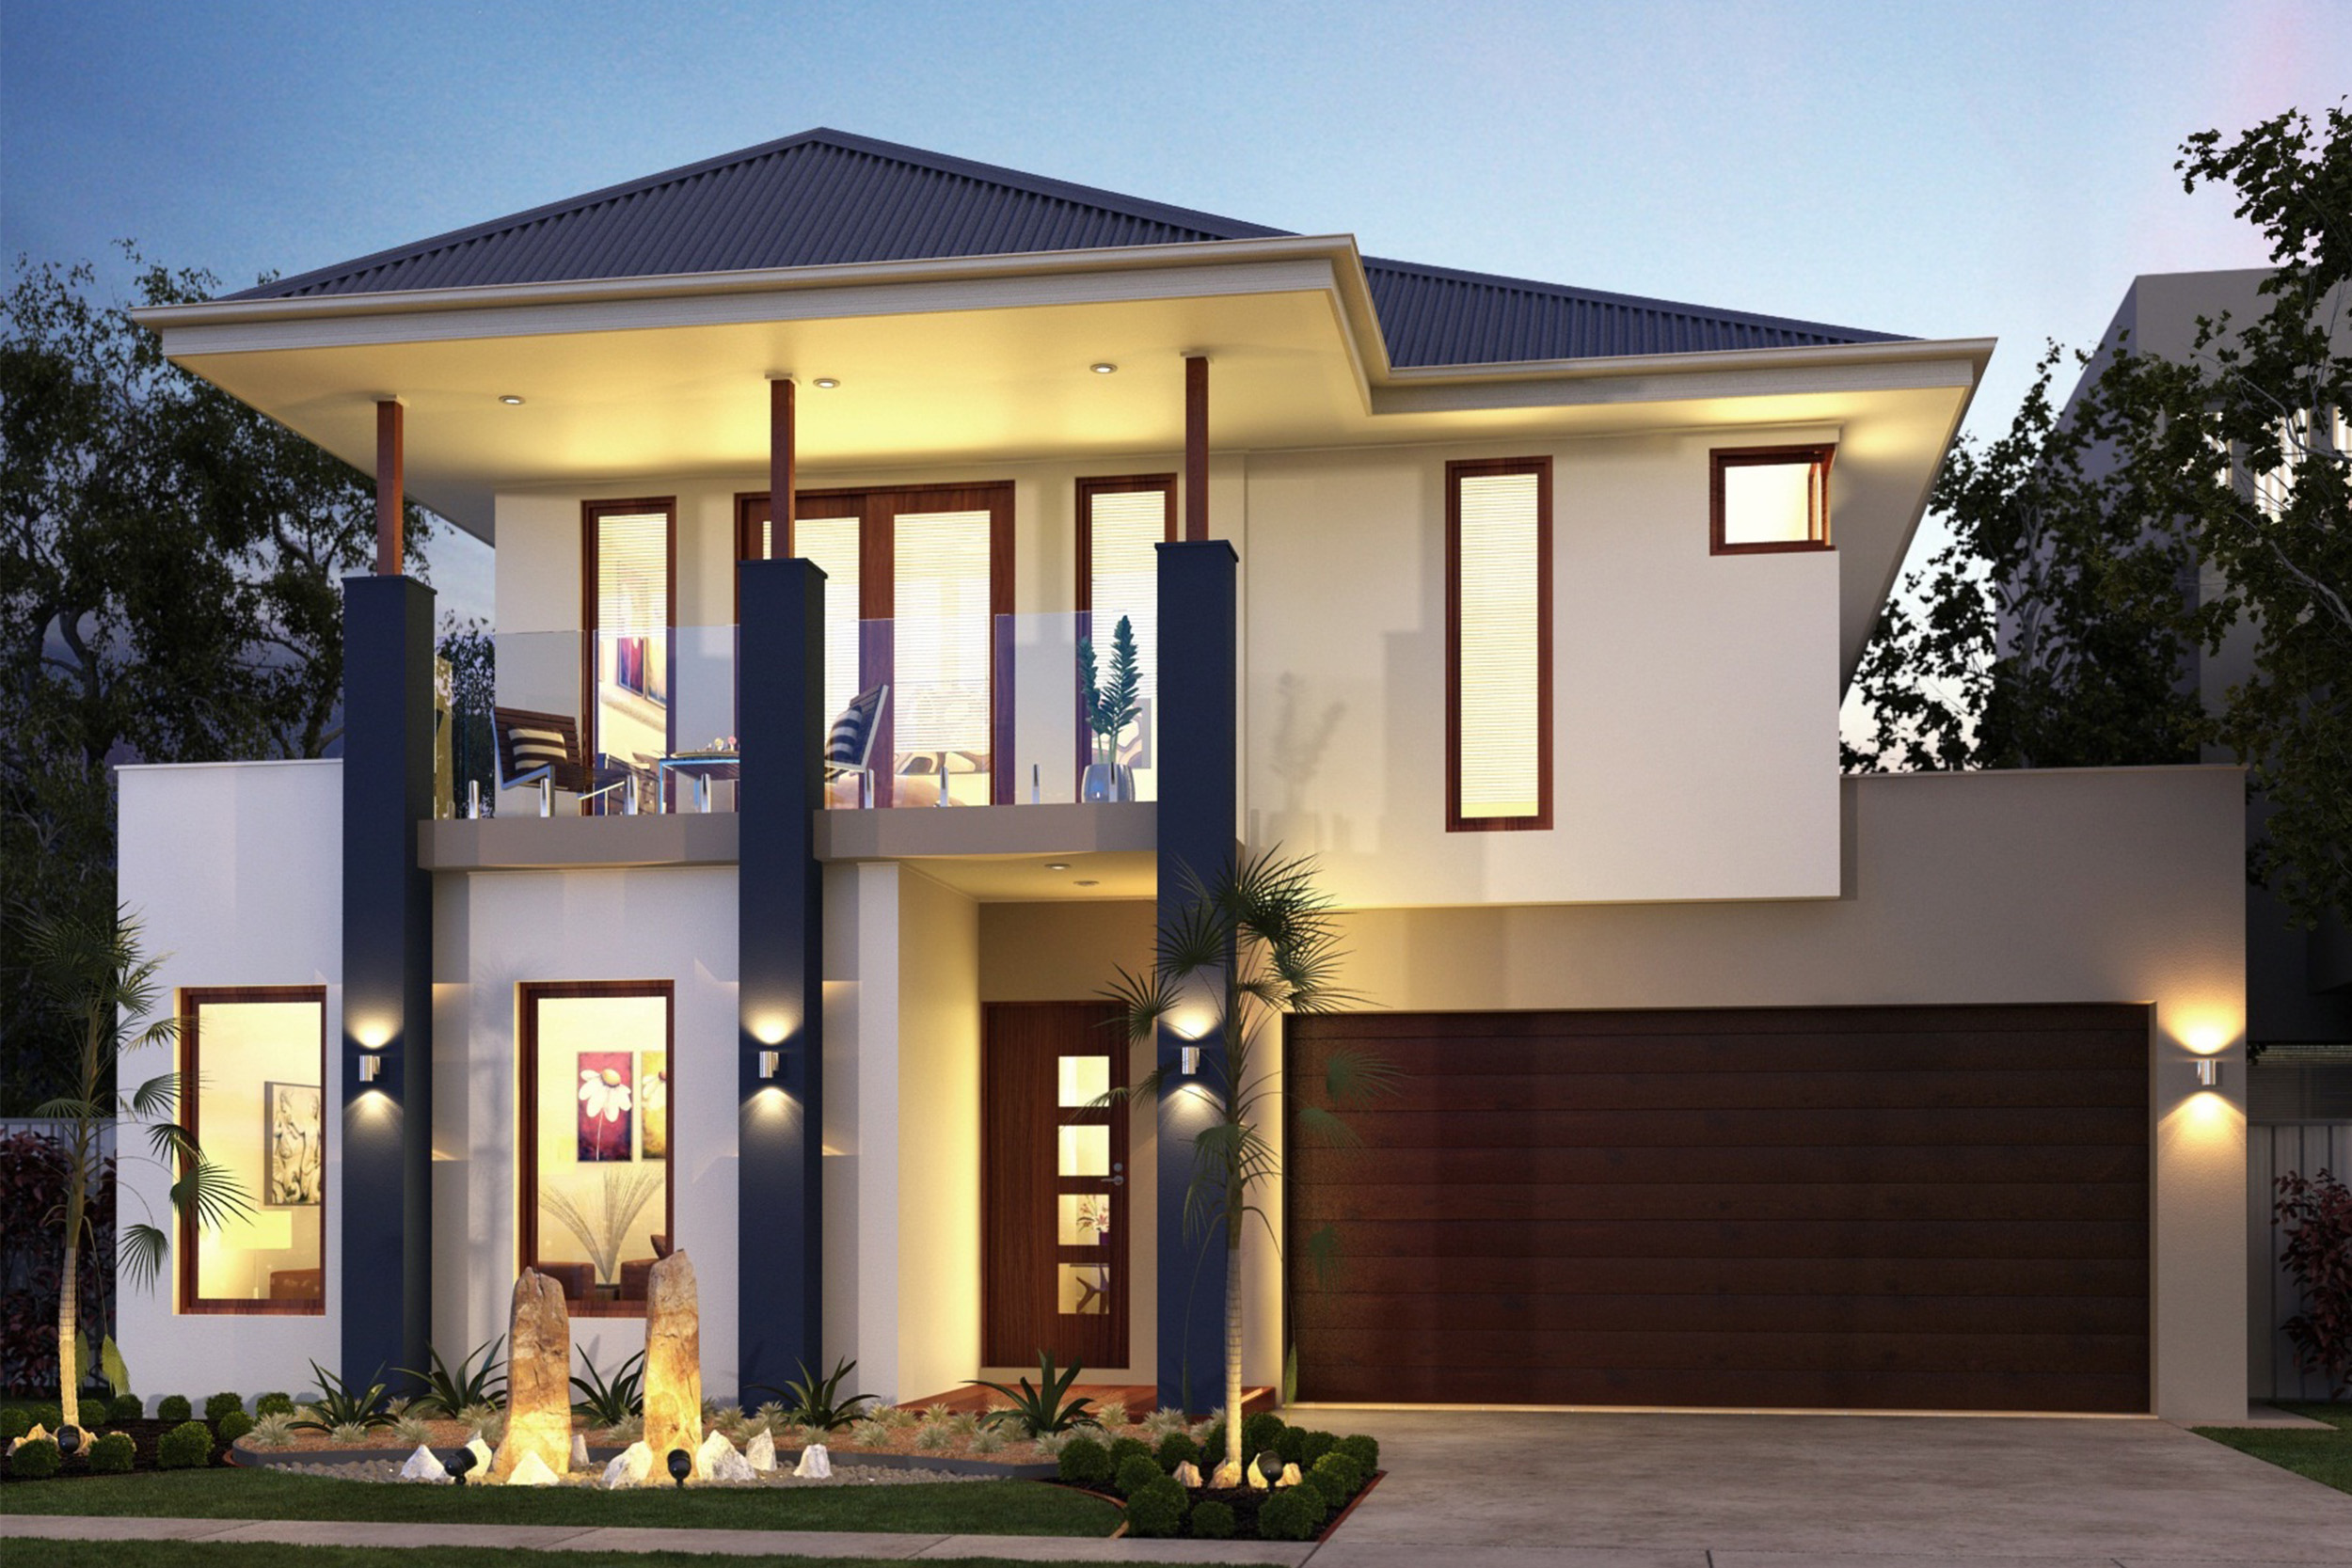 Savana 36 Home Design